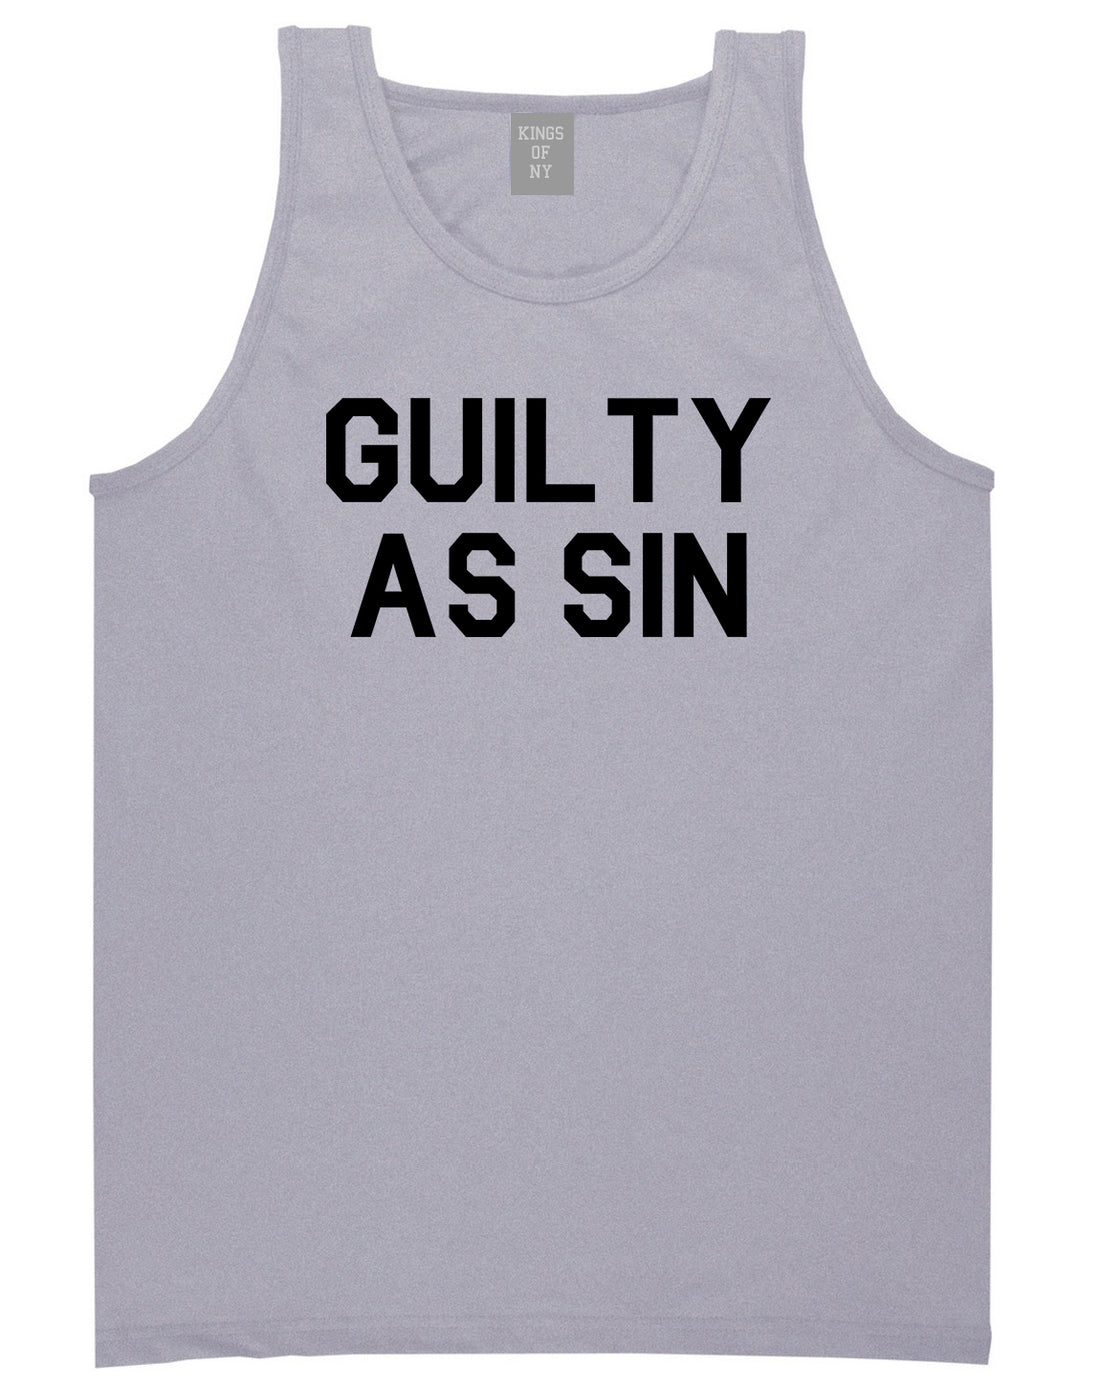 Guilty As Sin Mens Tank Top Shirt Grey by Kings Of NY